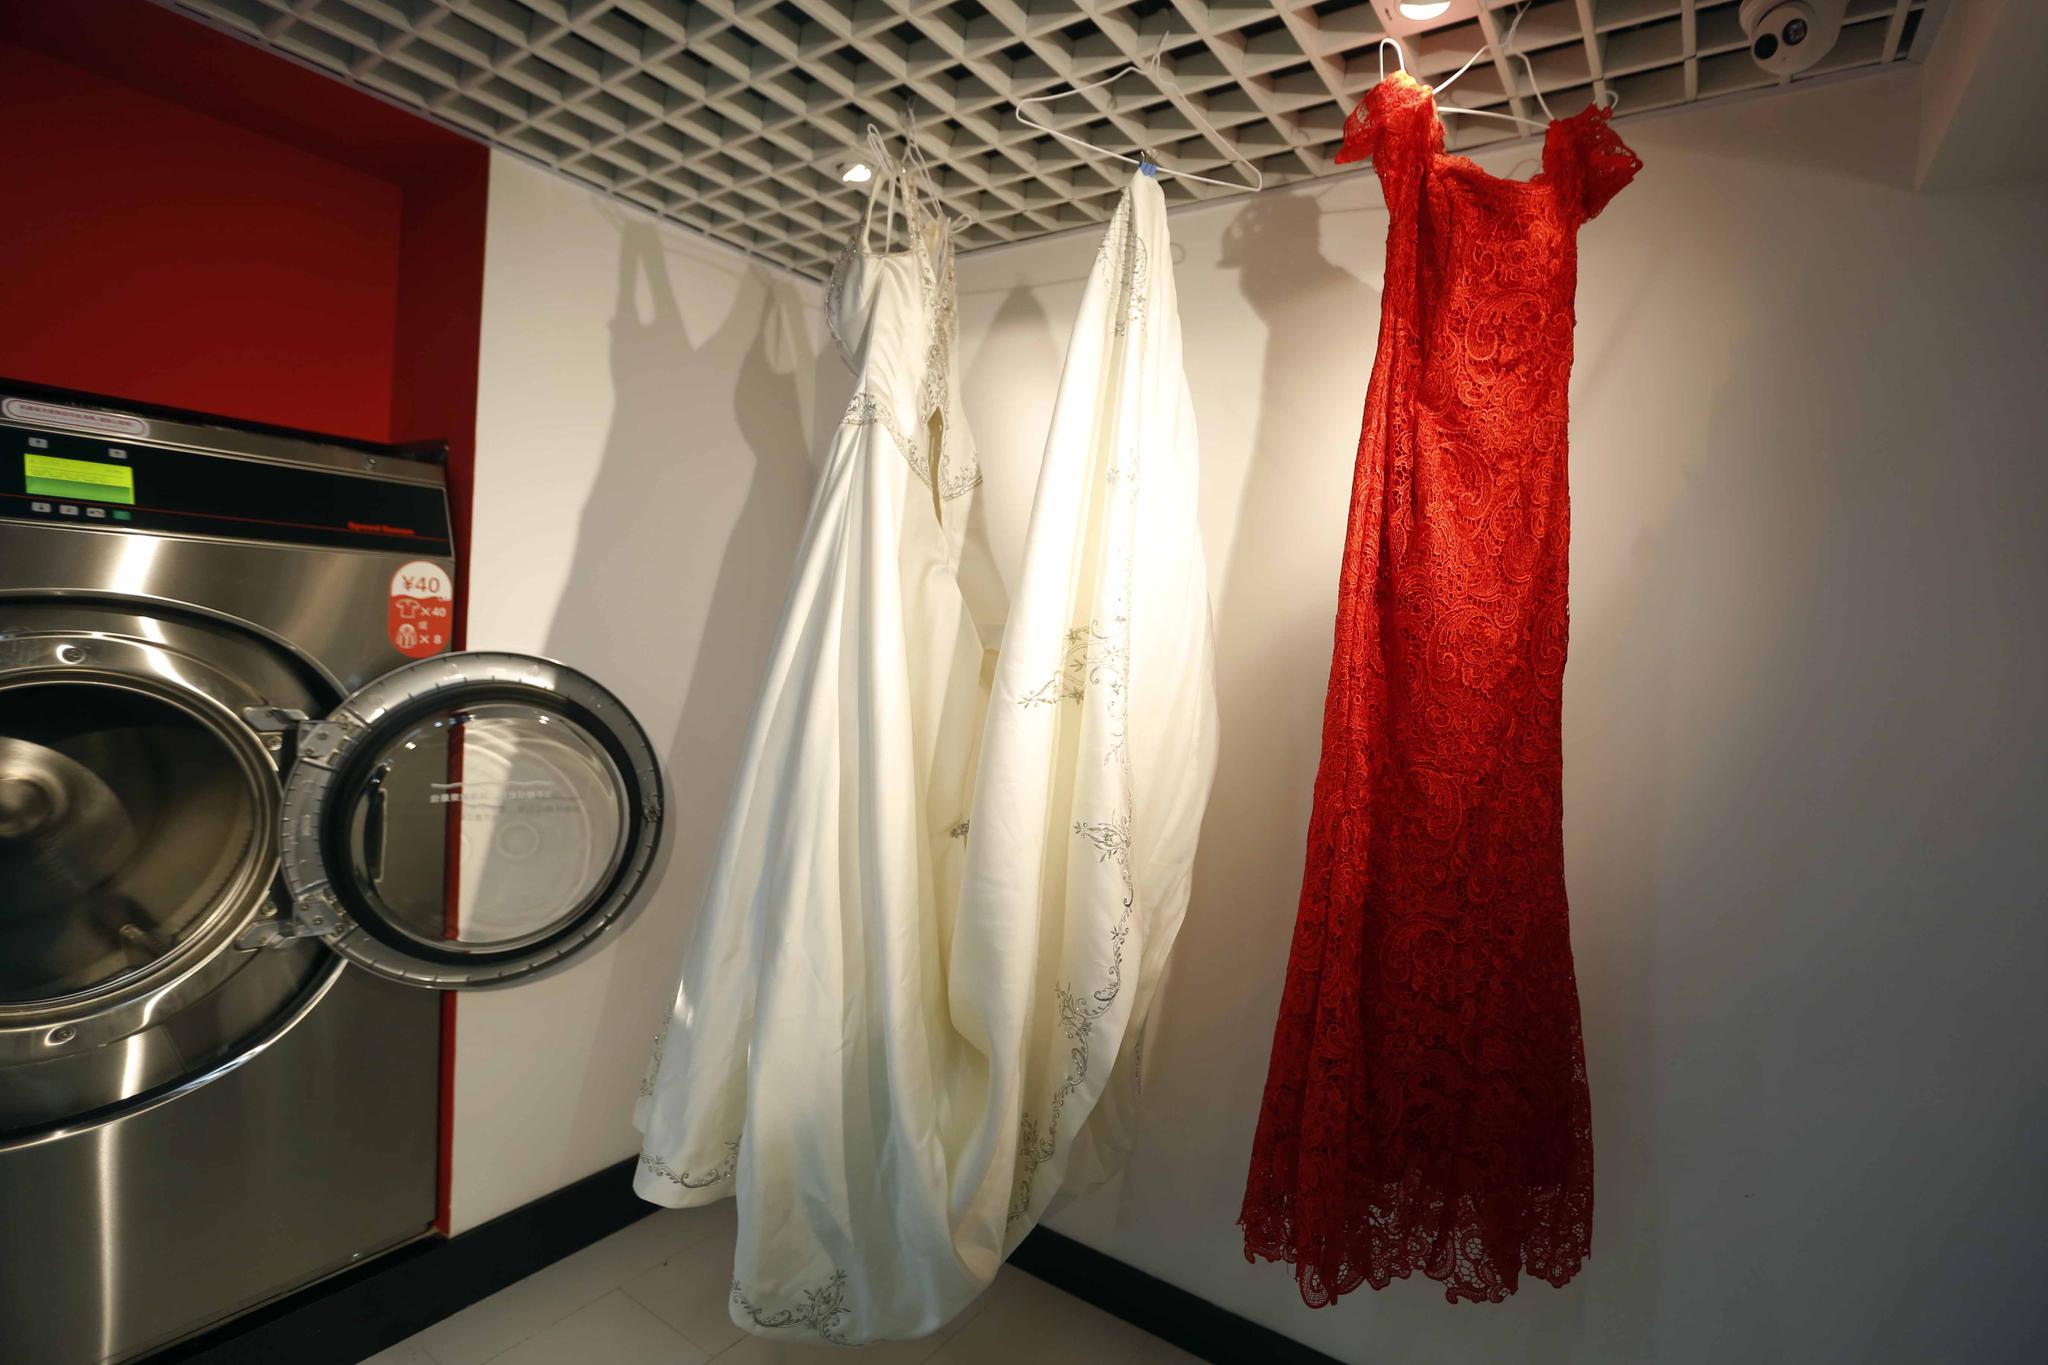 风靡欧美的自助洗衣店试水中国,会水土不服吗